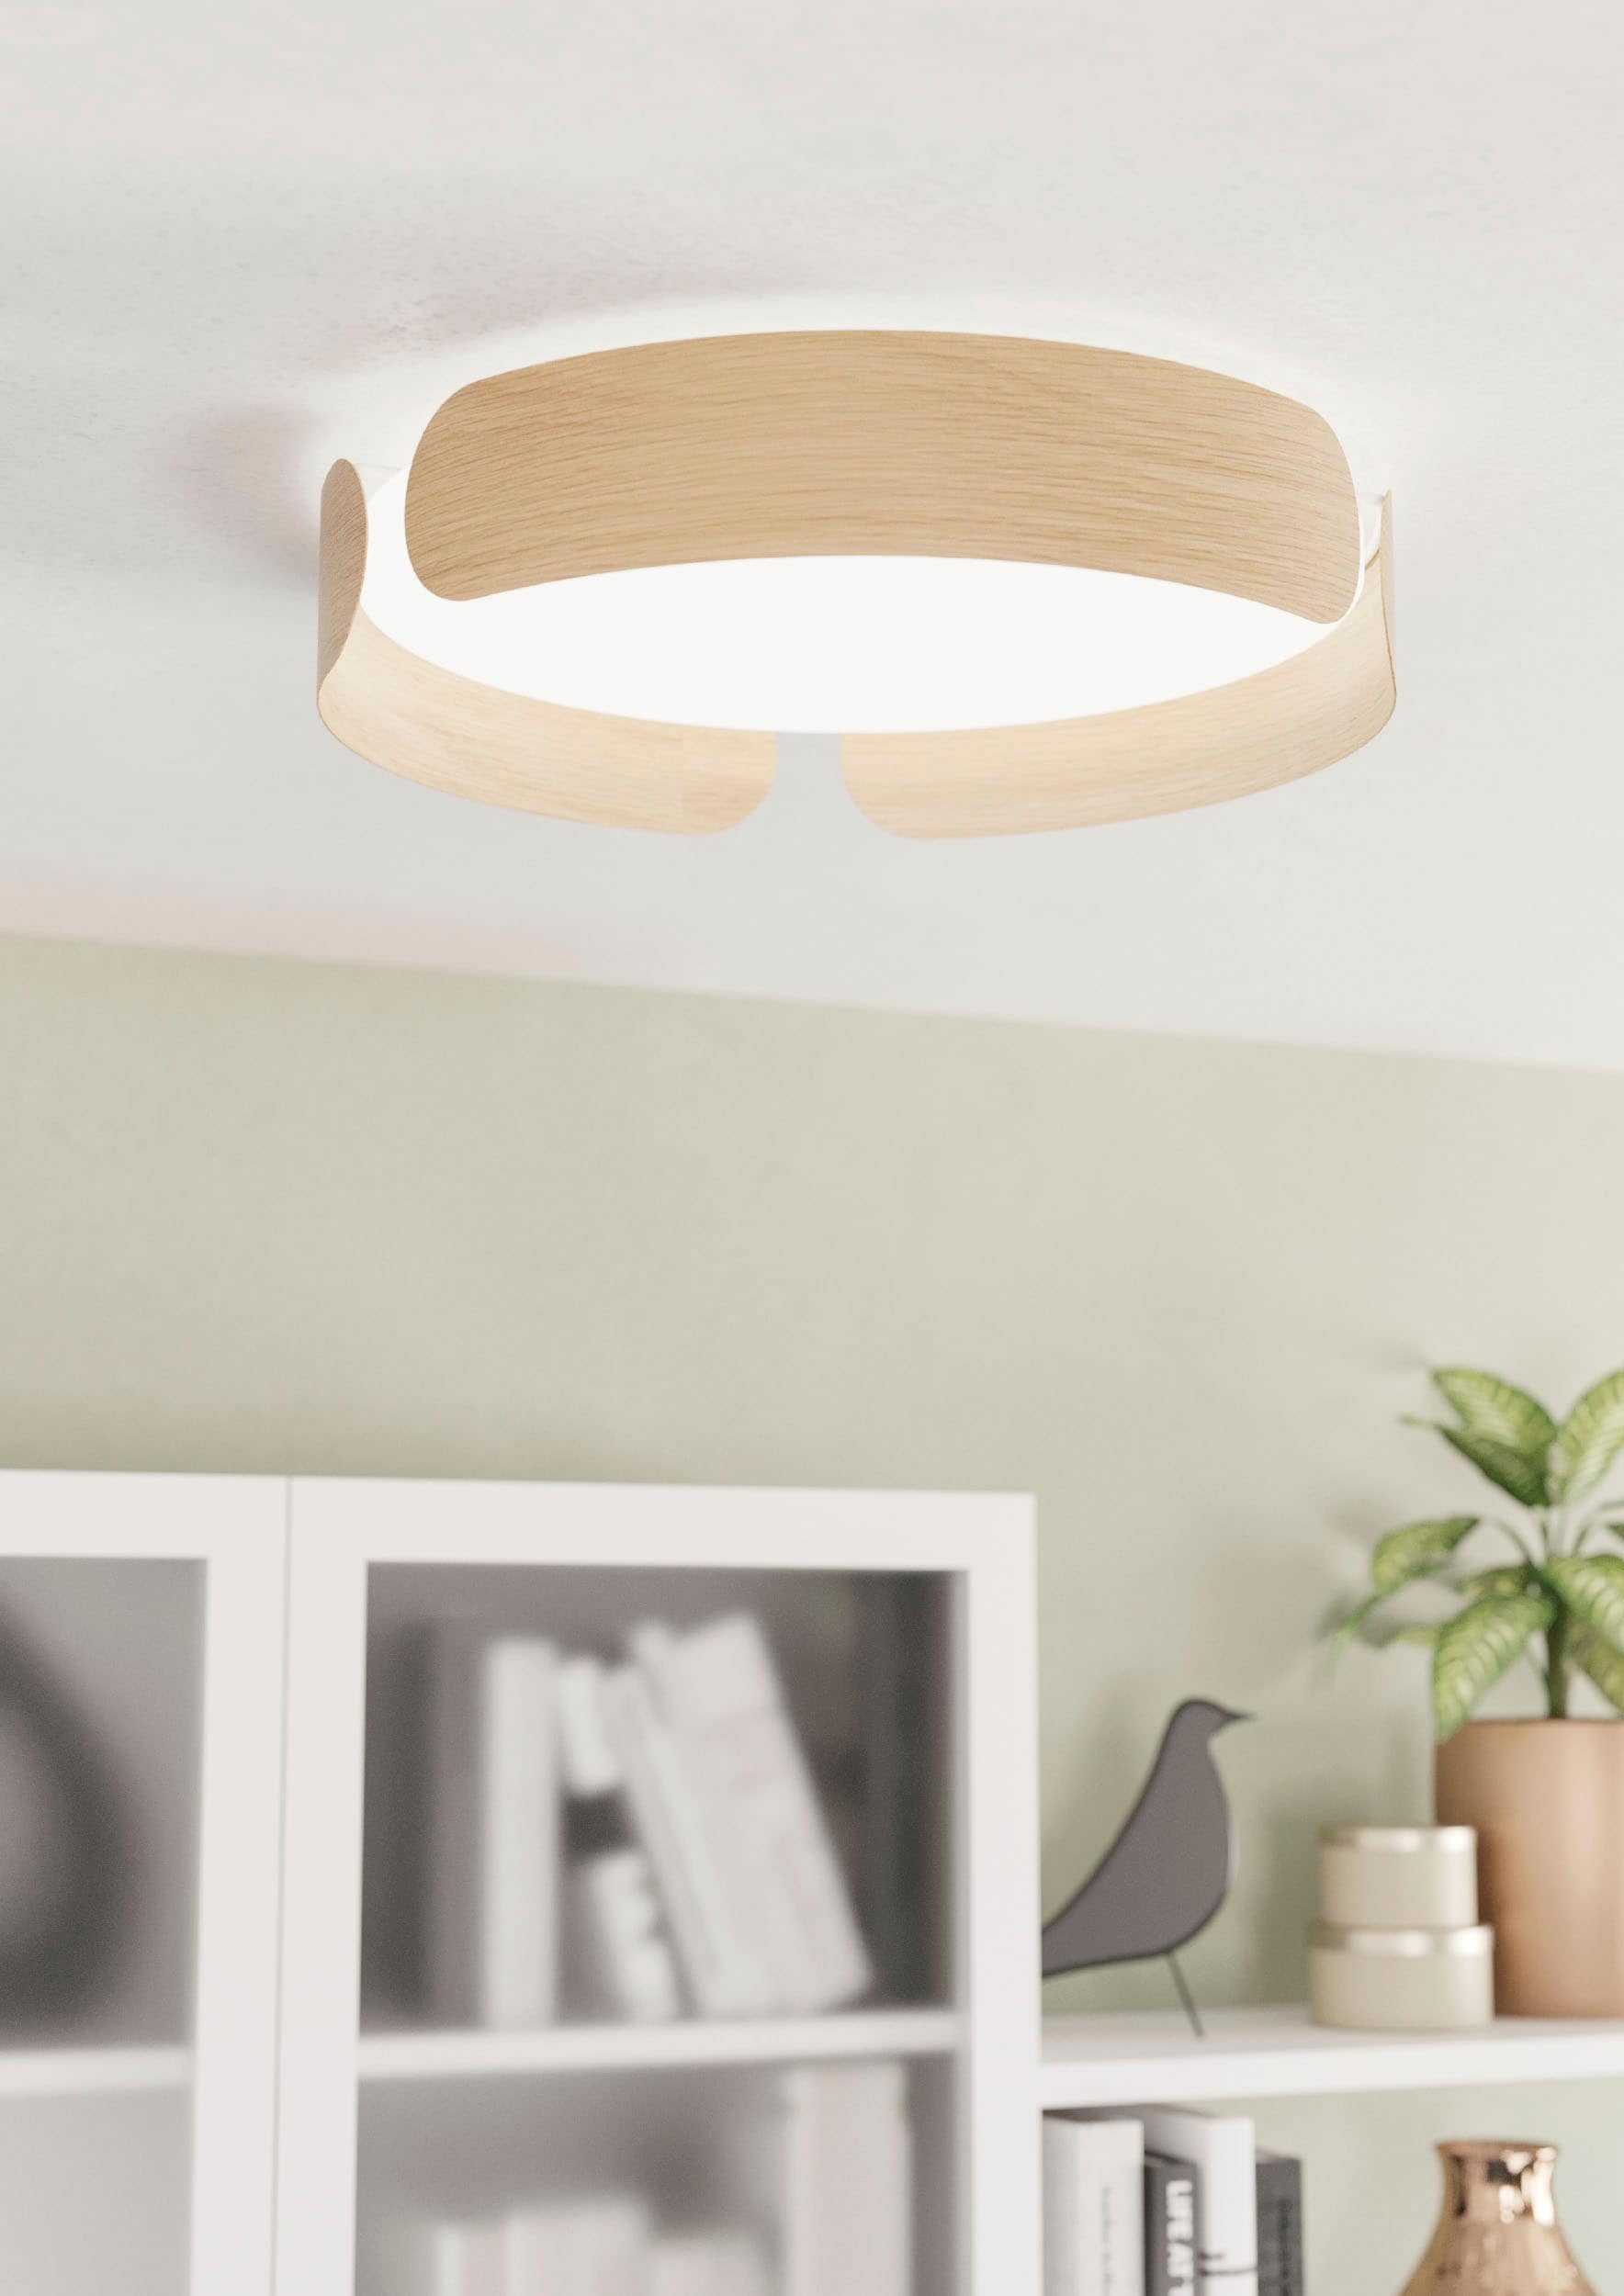 EGLO Deckenleuchte »VALCASOTTO«, Deckenlampe, Wohnzimmerlampe, Schlafzimmerlampe, LED bei online Decke bestellen Lampe OTTO